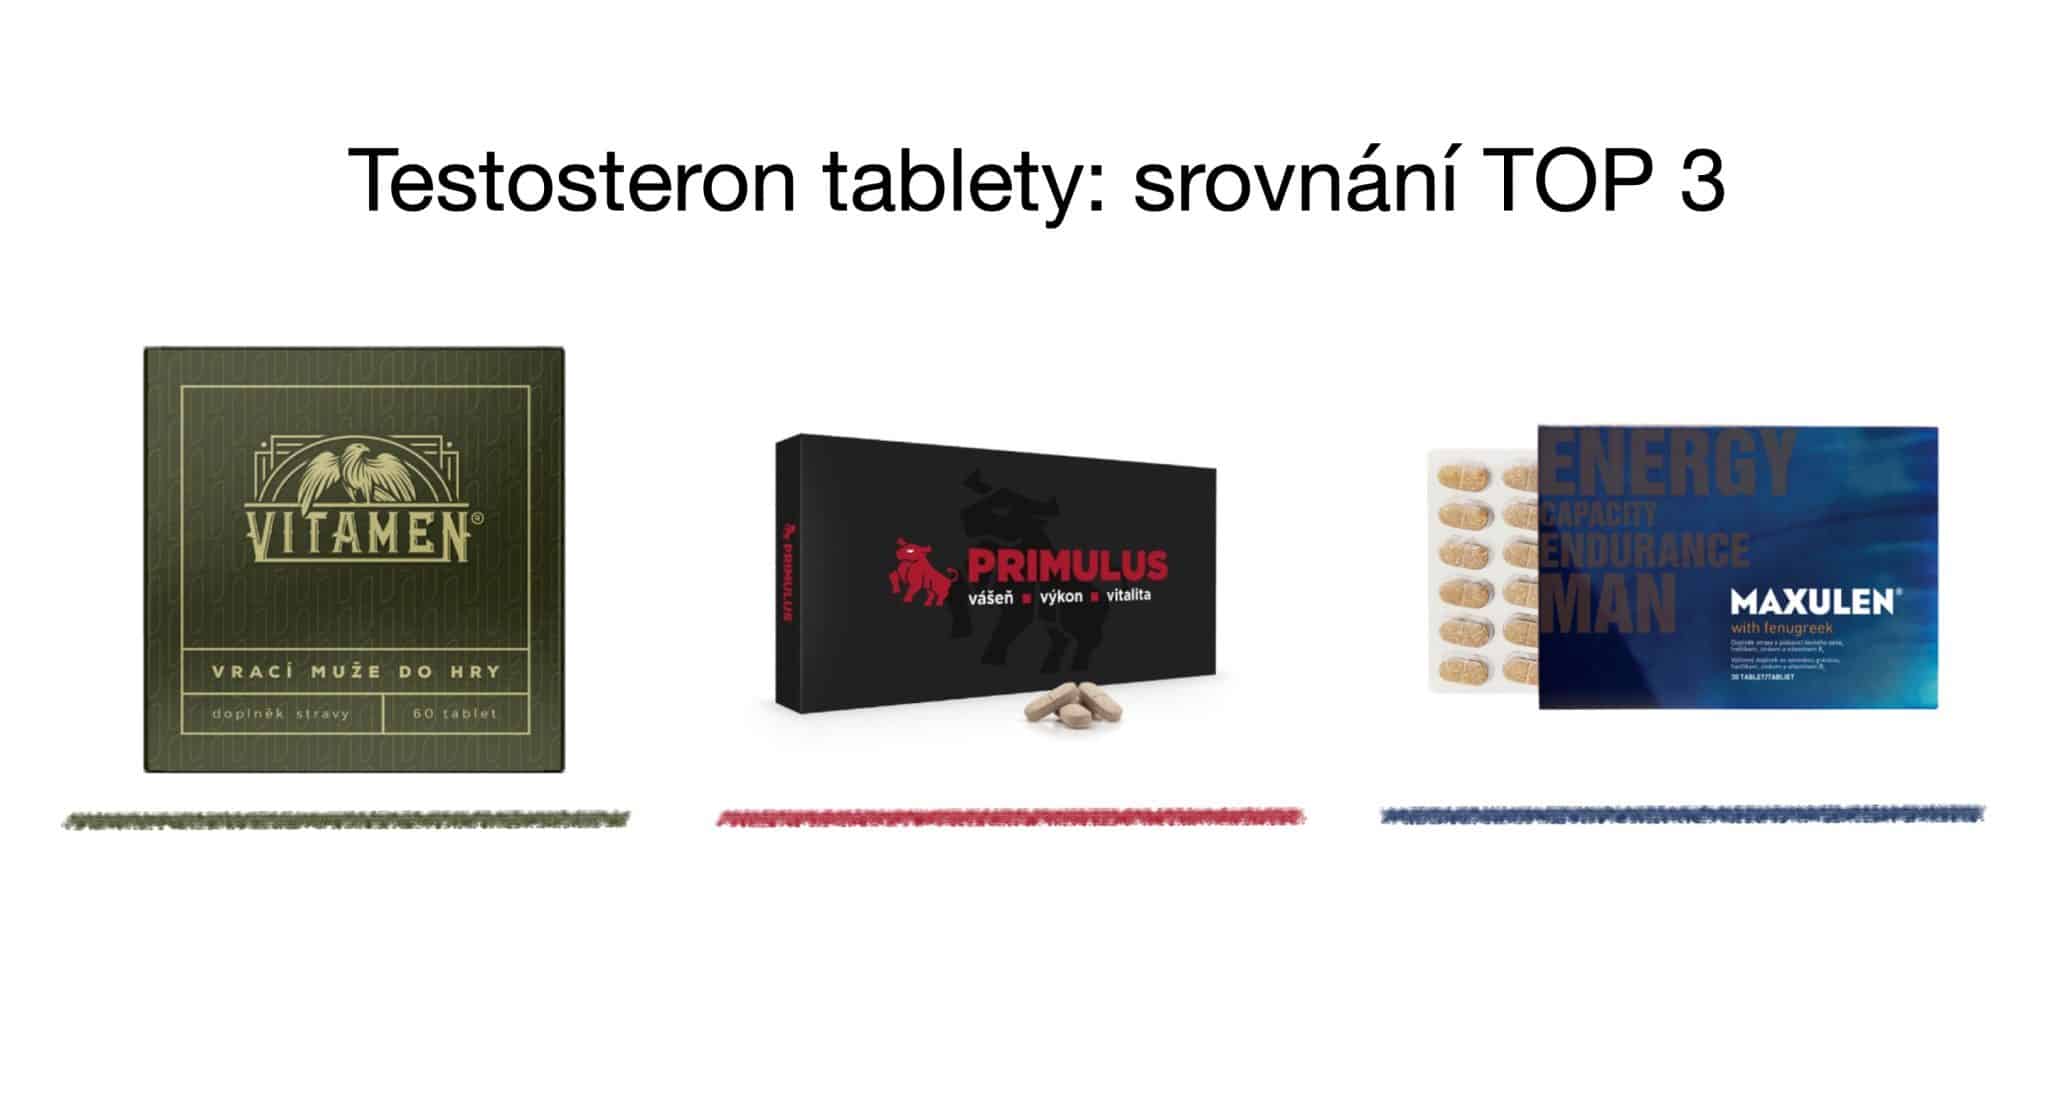 Testosteron tablety TOP 3 srovnání – vitamíny pro muže [recenze] 4